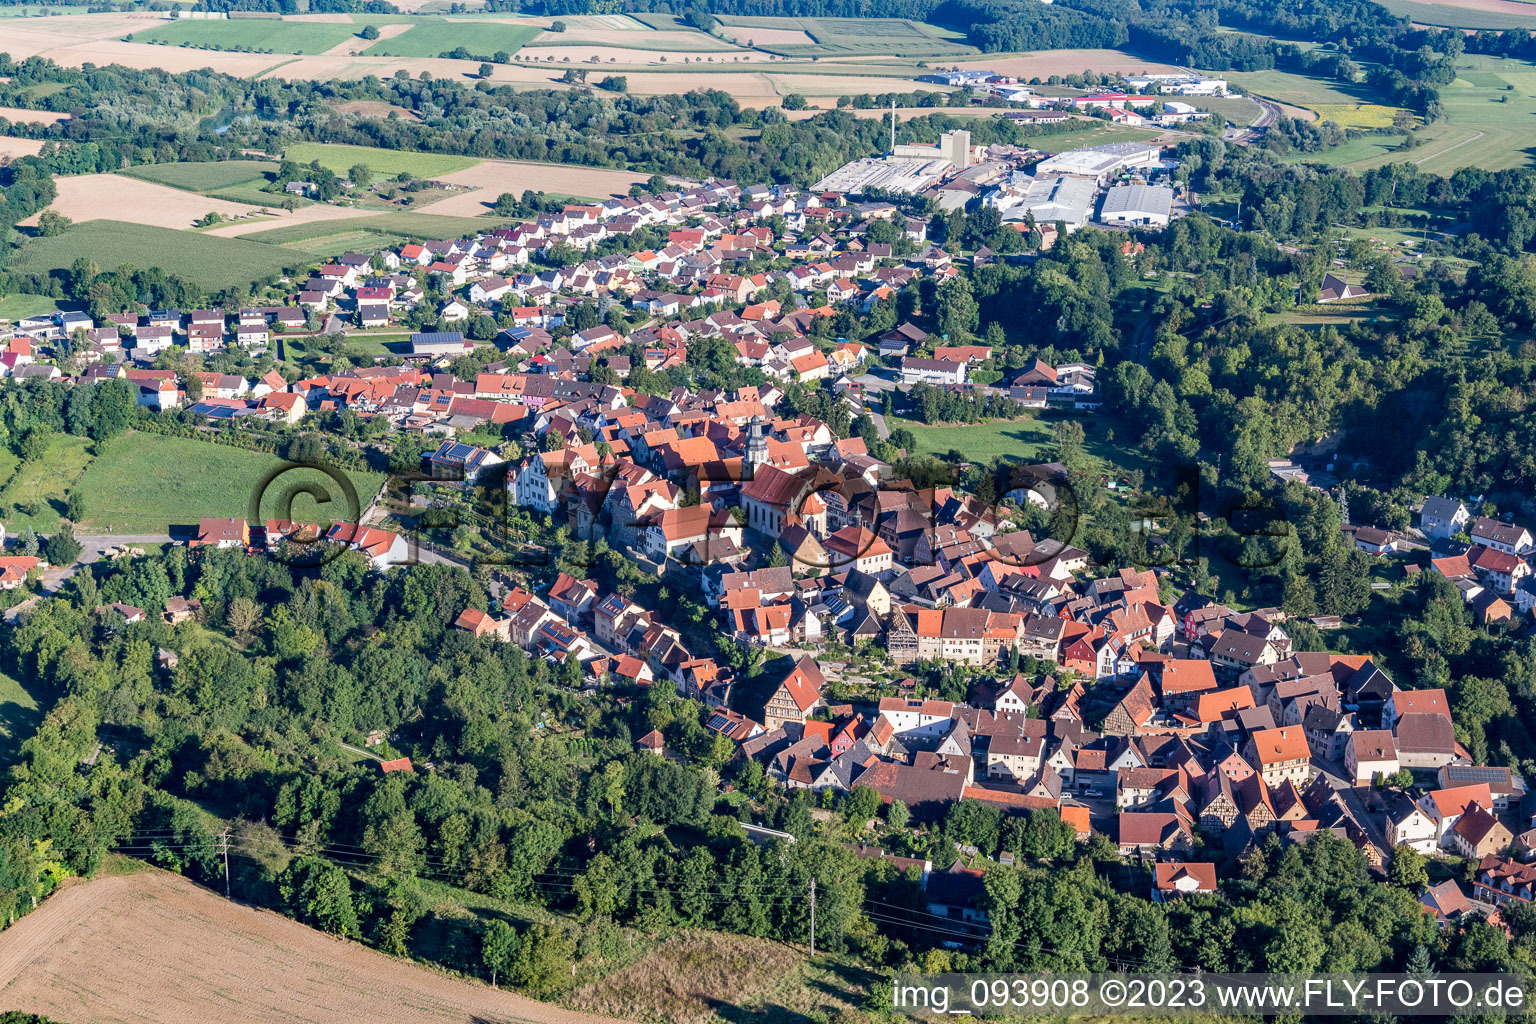 Photographie aérienne de Vue sur le village à le quartier Gochsheim in Kraichtal dans le département Bade-Wurtemberg, Allemagne